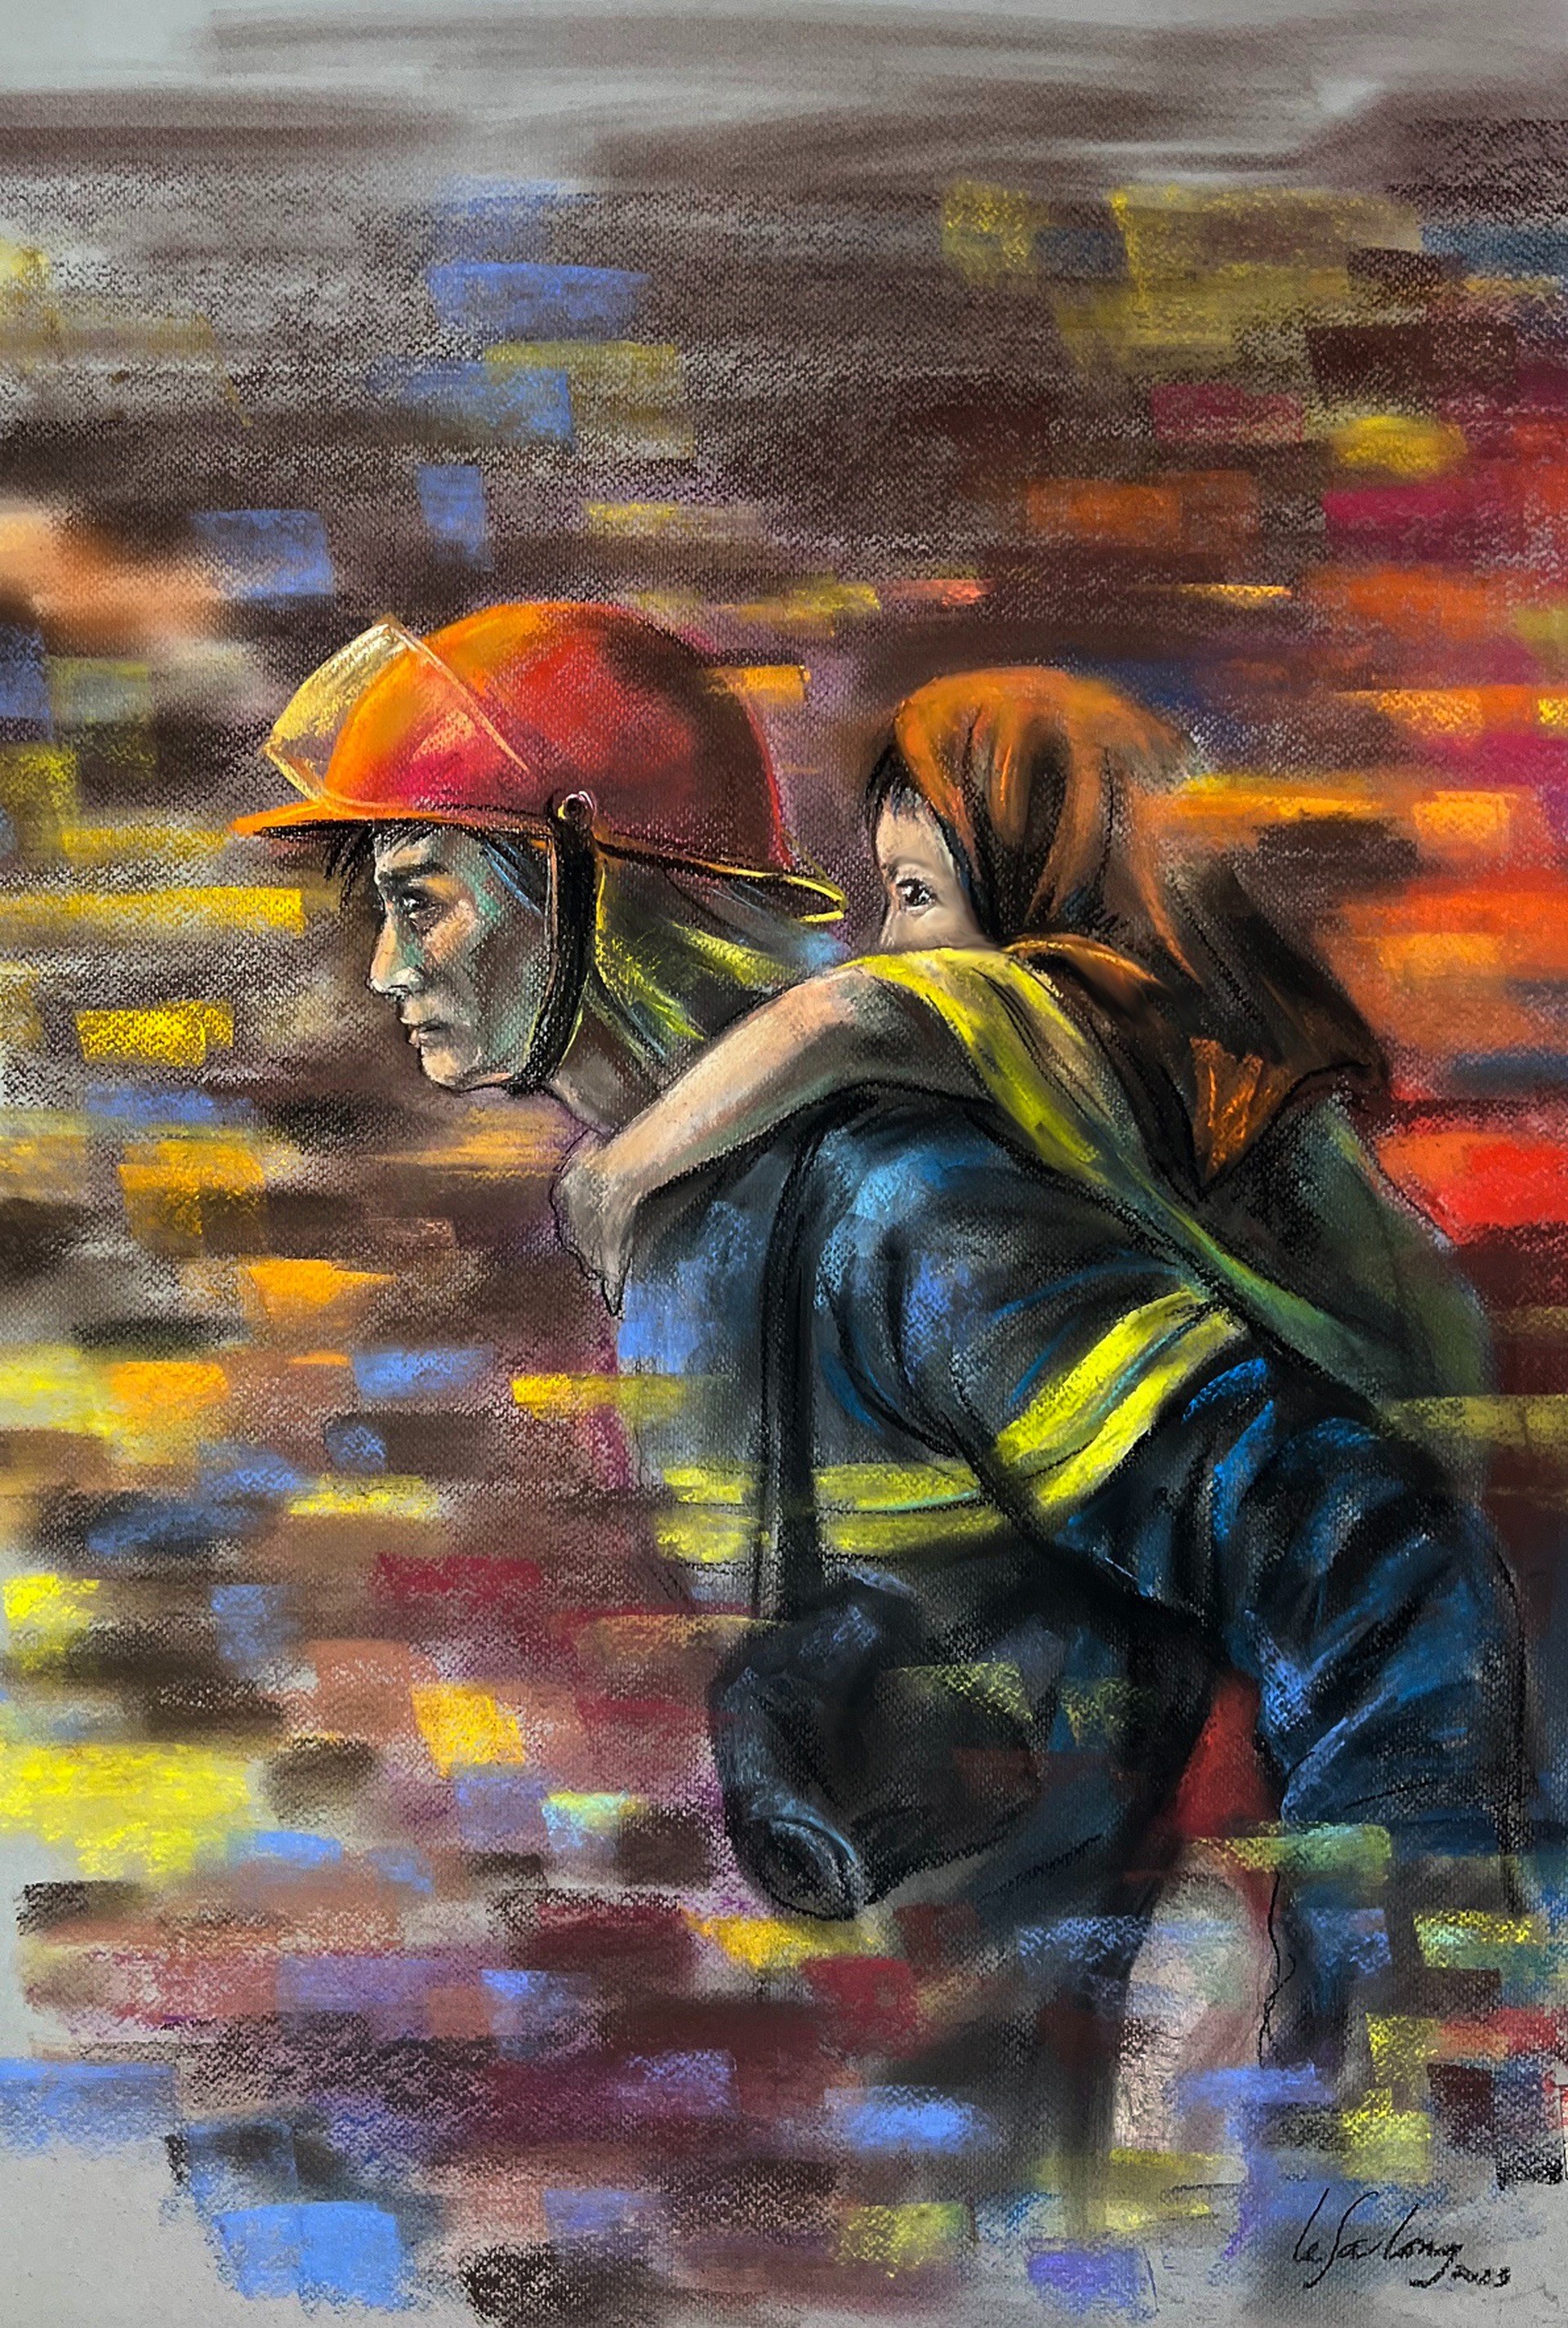 Bộ tranh khắc họa đêm chạy đua khói lửa cứu người trong vụ cháy chung cư mini ở Hà Nội - Ảnh 5.